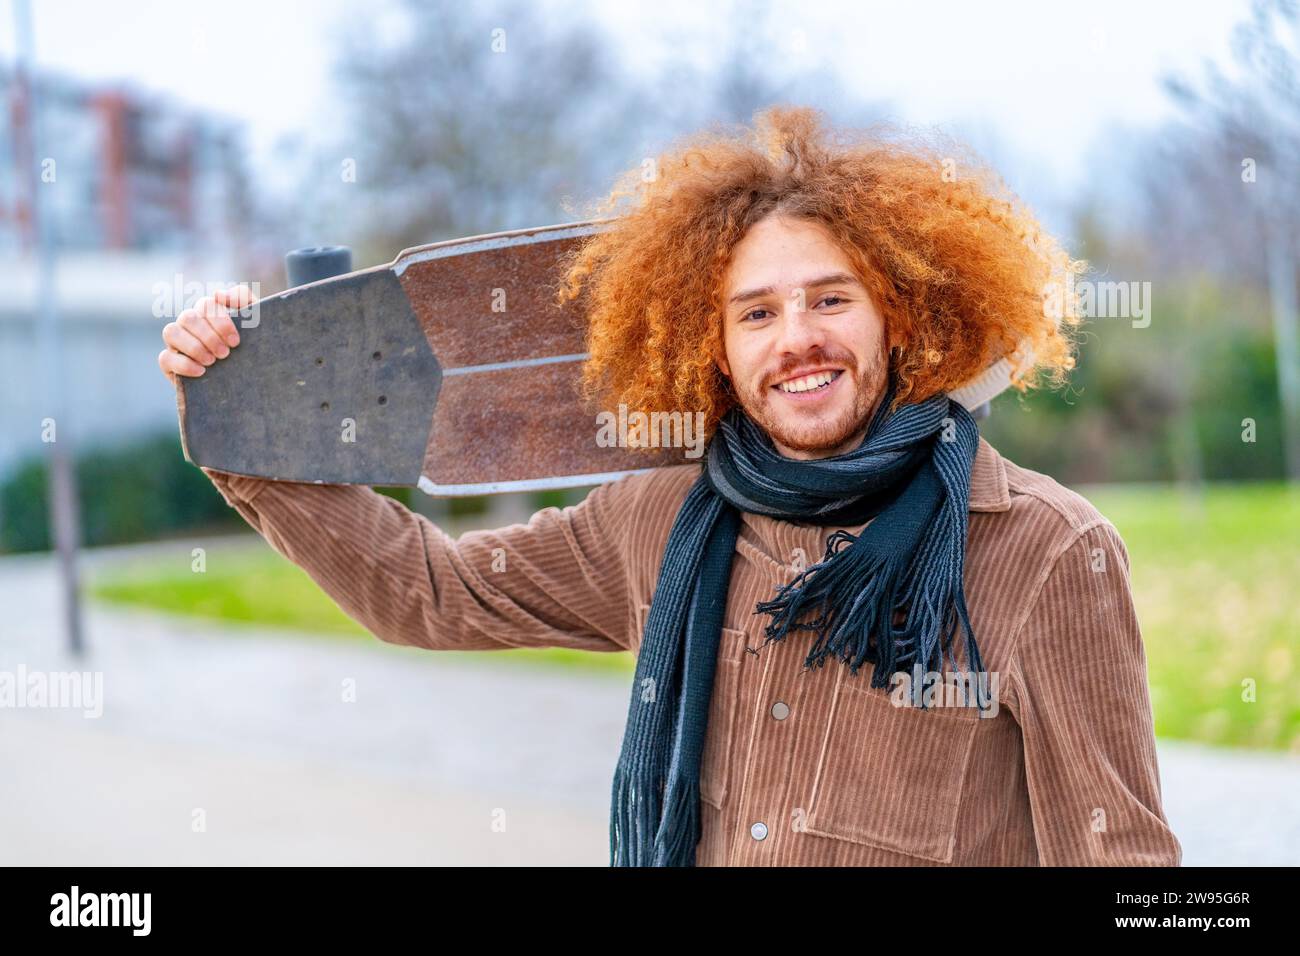 Porträt eines rothaarigen Skaters, der in einem Stadtpark einen Schlittschuh trägt und in die Kamera lächelt Stockfoto